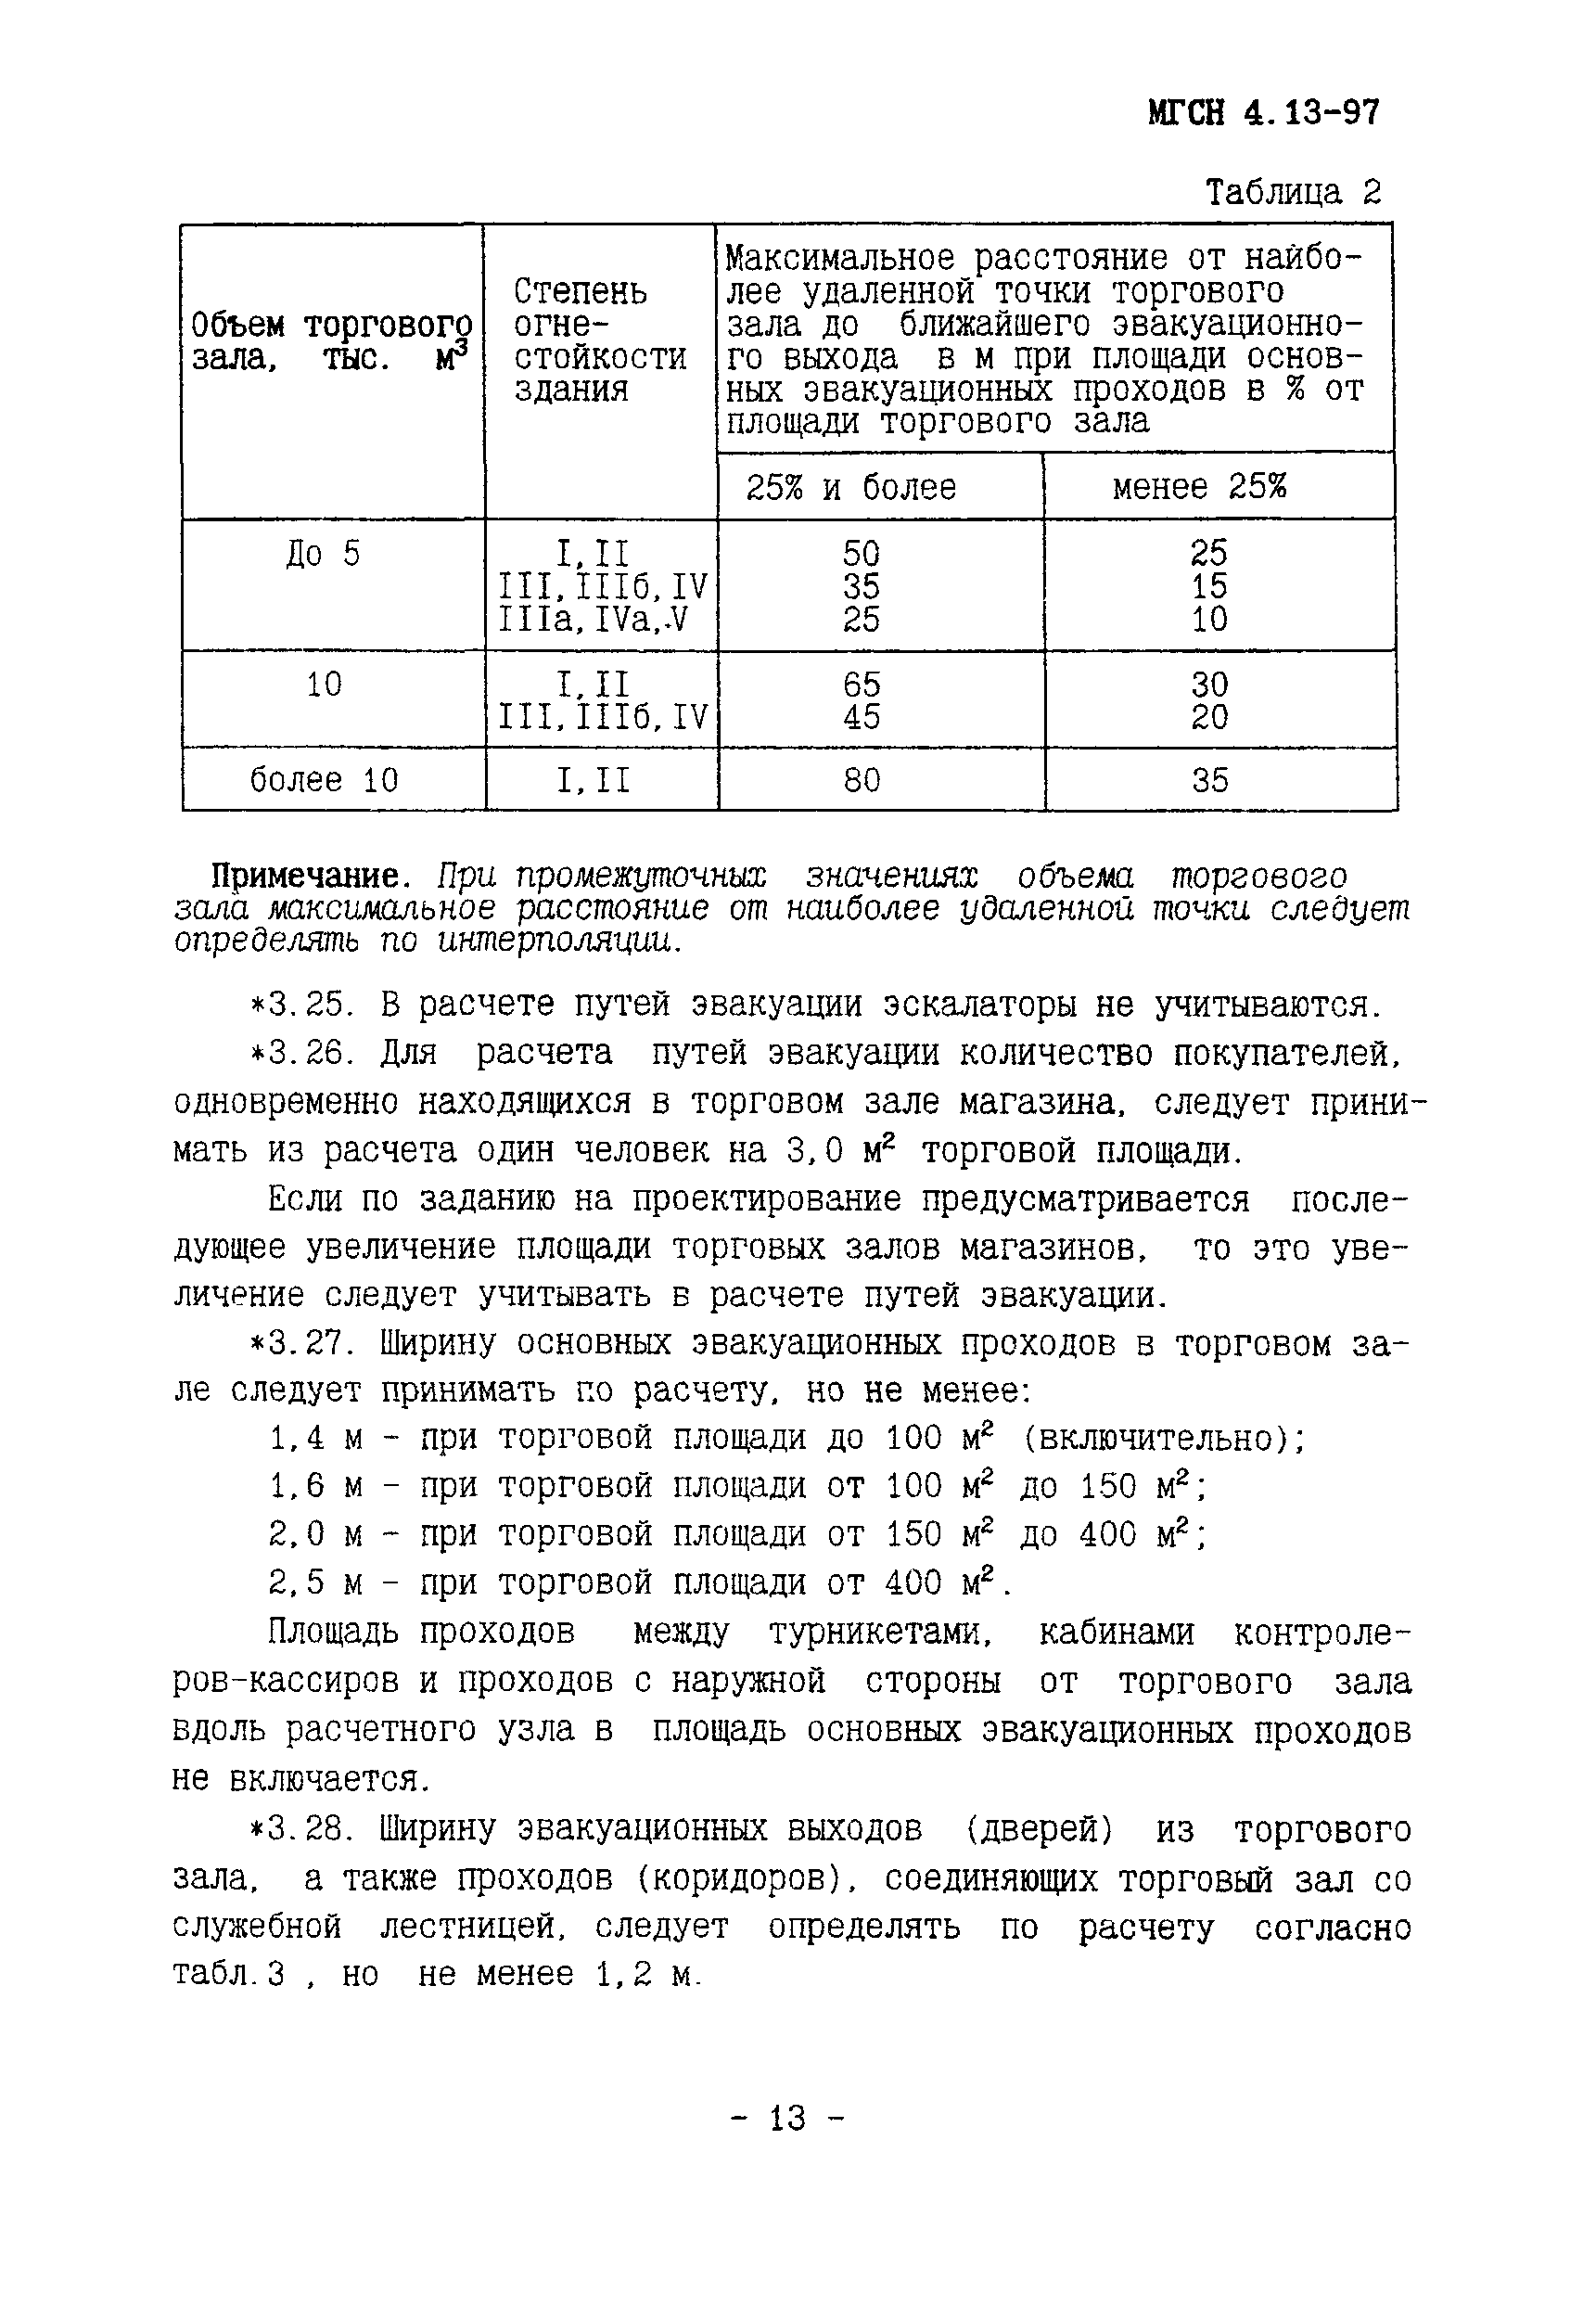 ТСН 31-315-99